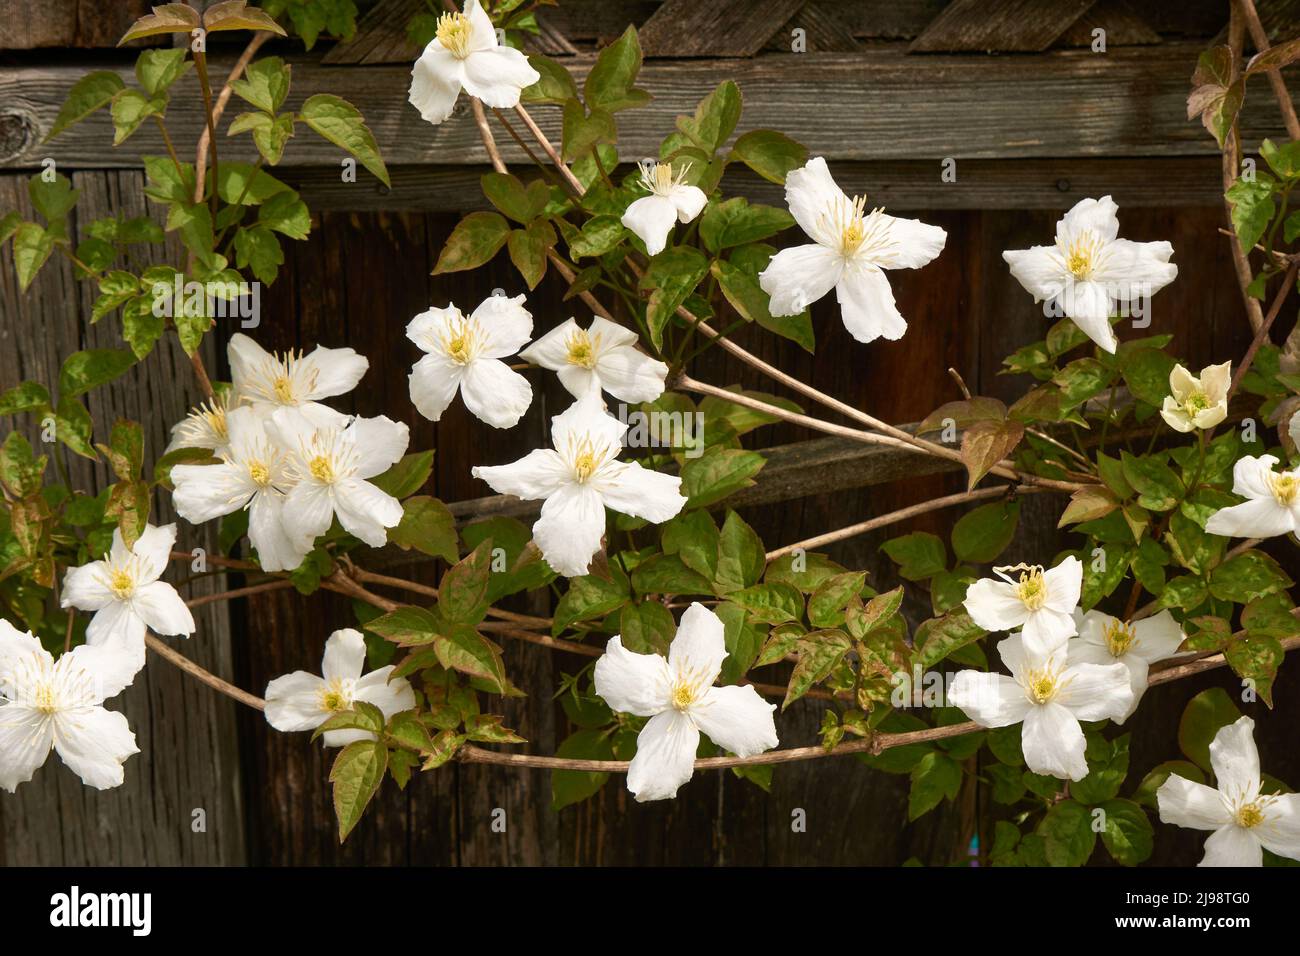 Clematis blanc grimpant le long d'une clôture en bois au printemps Banque D'Images